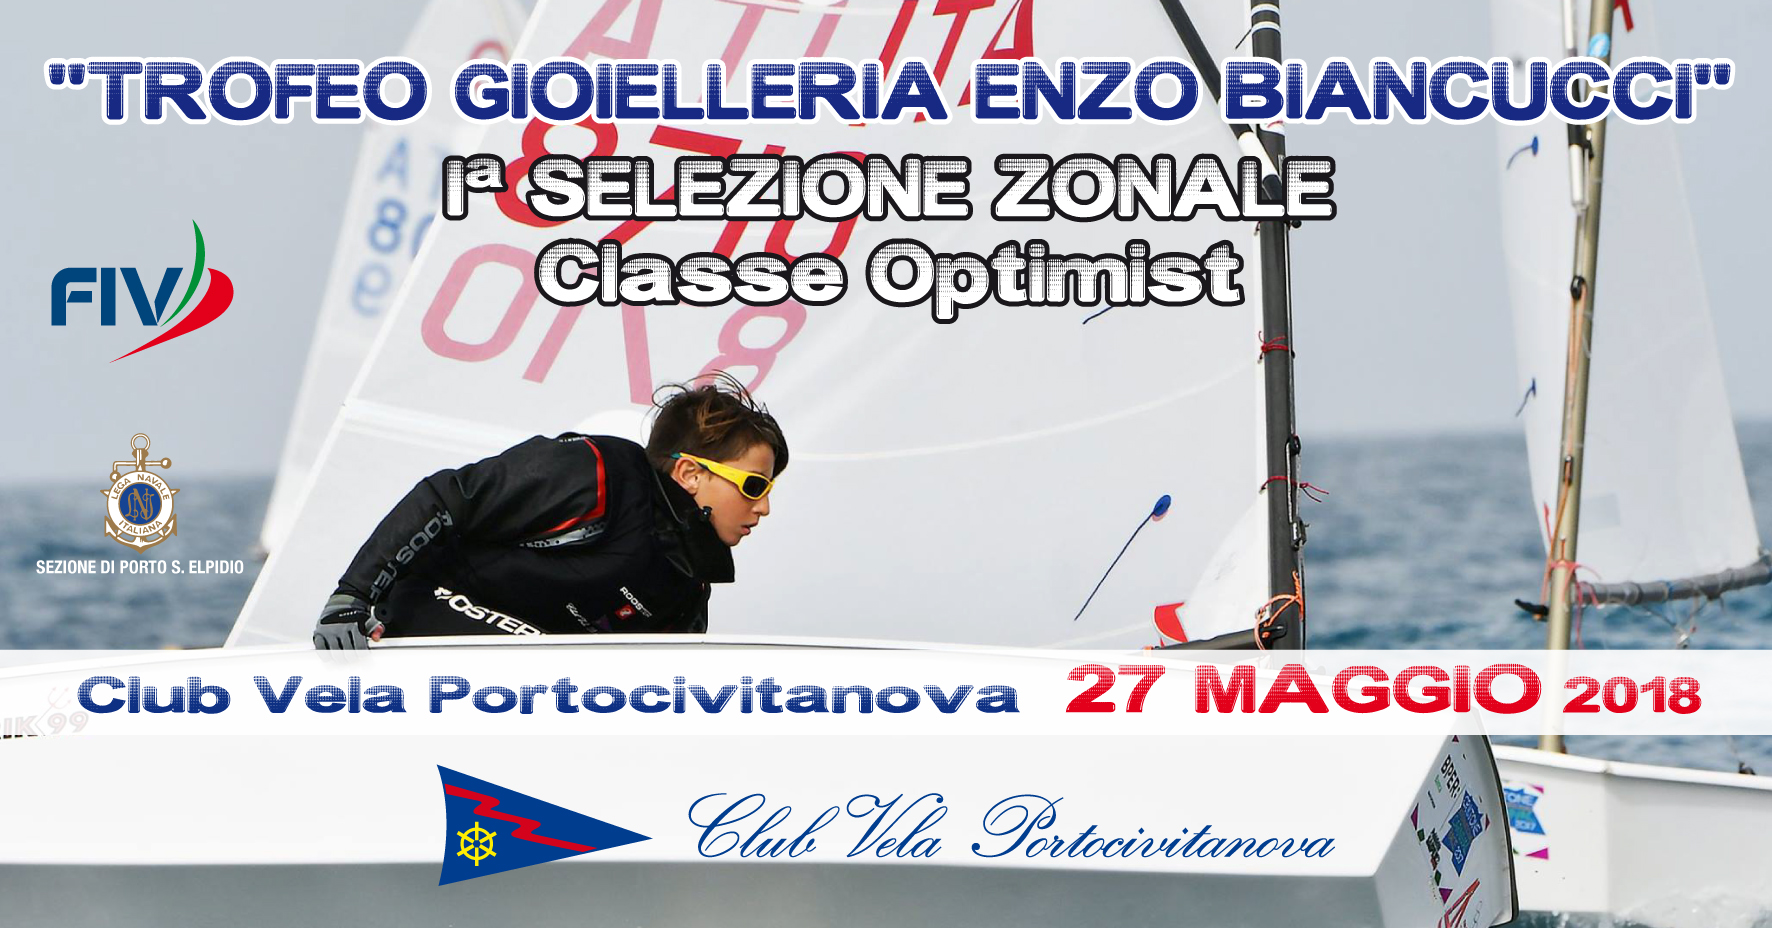 27 maggio 2018 – TROFEO GIOIELLERIA ENZO BIANCUCCI 1^ Selezione zonale optimist e 3^ prova Campionato zonale optimist